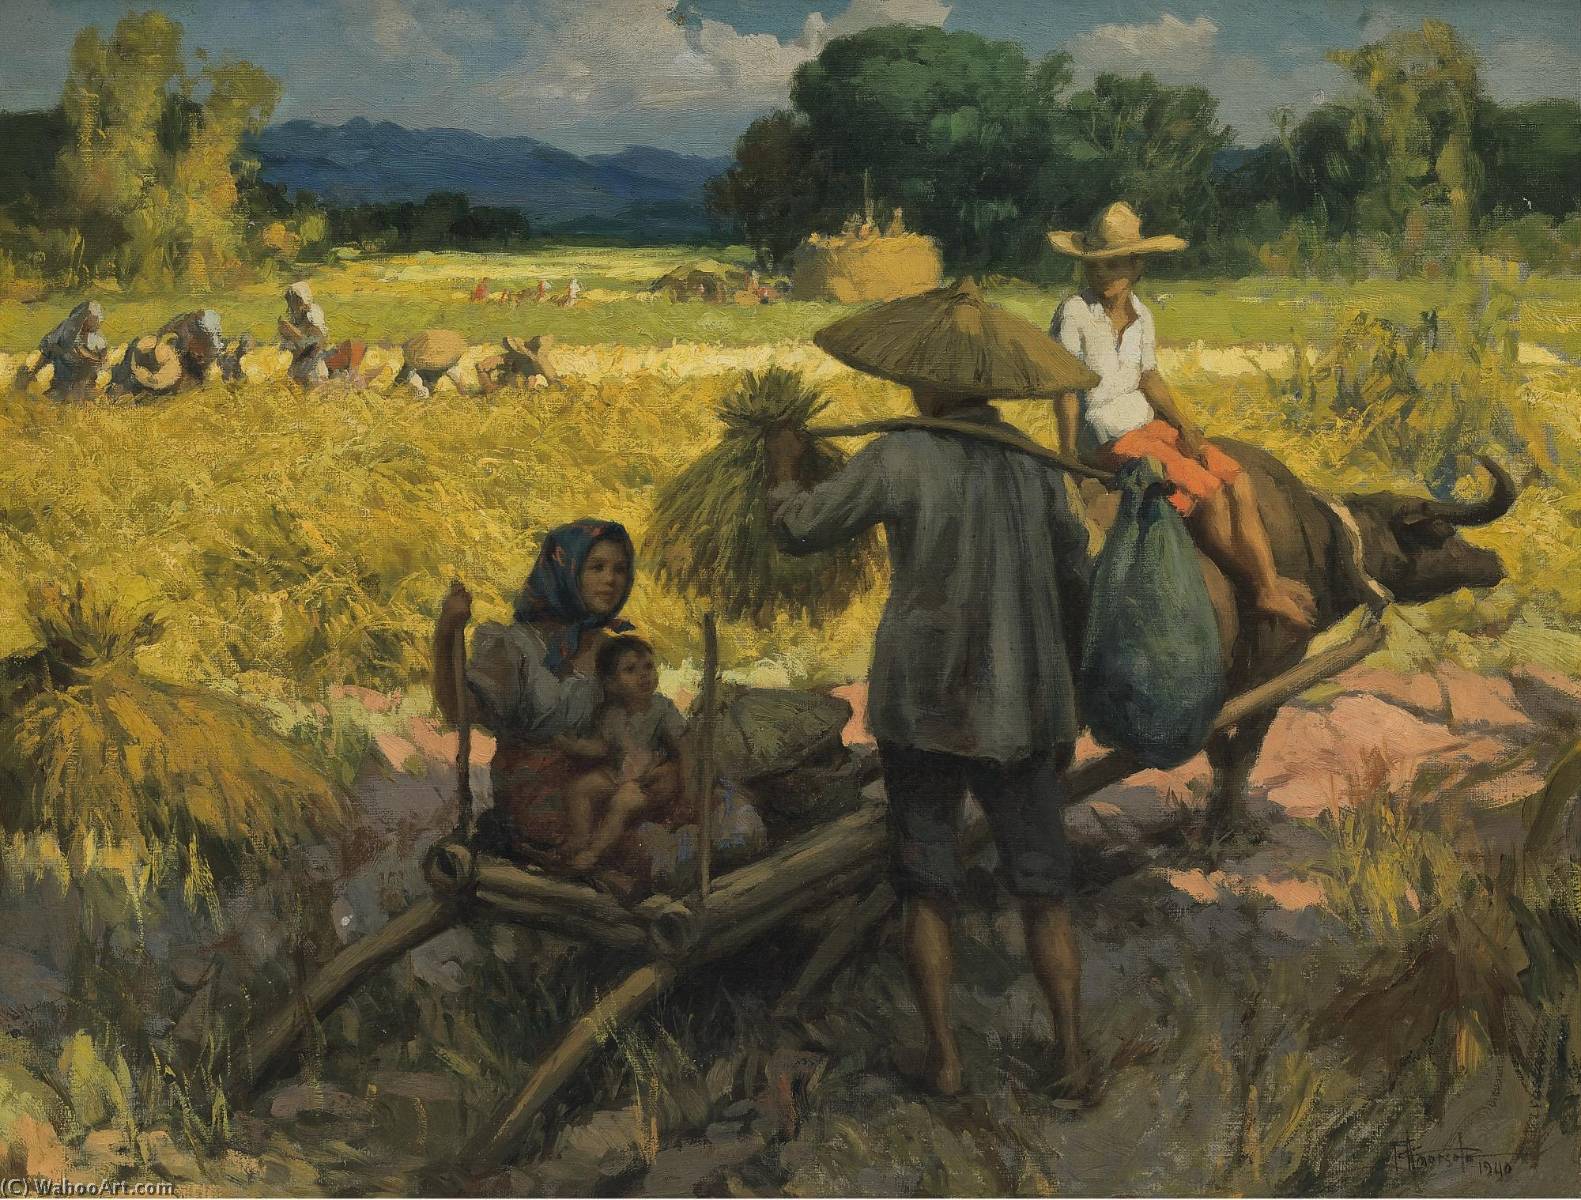 WikiOO.org - Enciklopedija likovnih umjetnosti - Slikarstvo, umjetnička djela Fernando Cueto Amorsolo - Harvesting